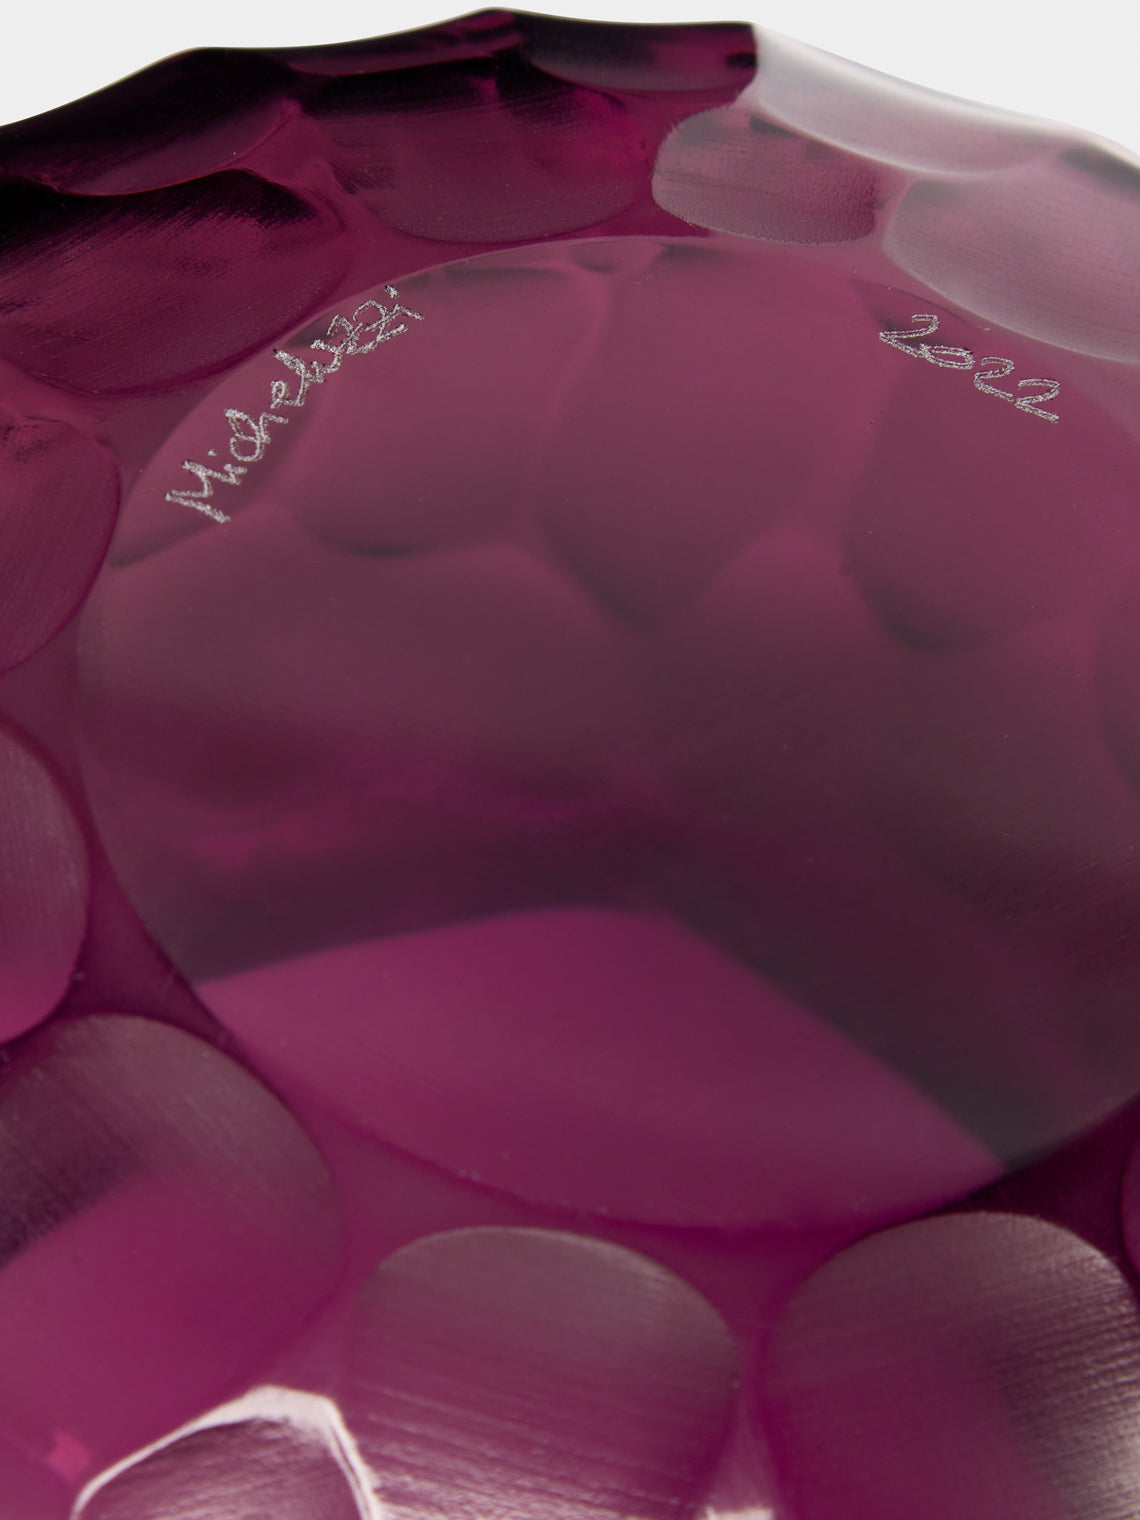 Micheluzzi Glass - Puffo Ametista Hand-Blown Murano Glass Vase - Purple - ABASK